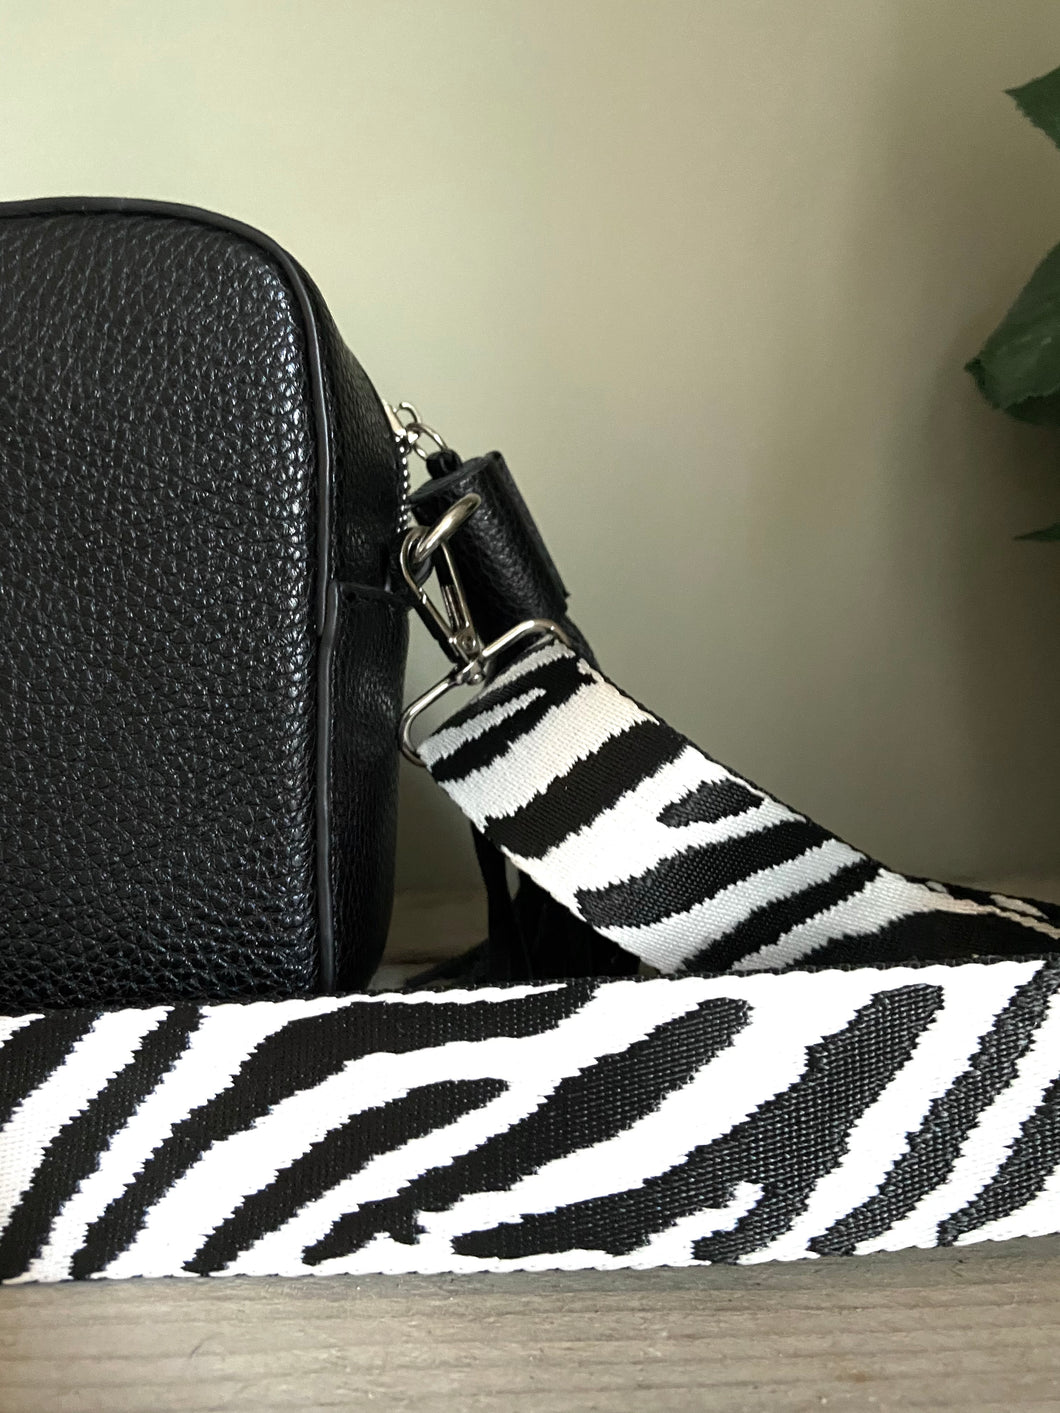 Black & White Zebra Bag Strap